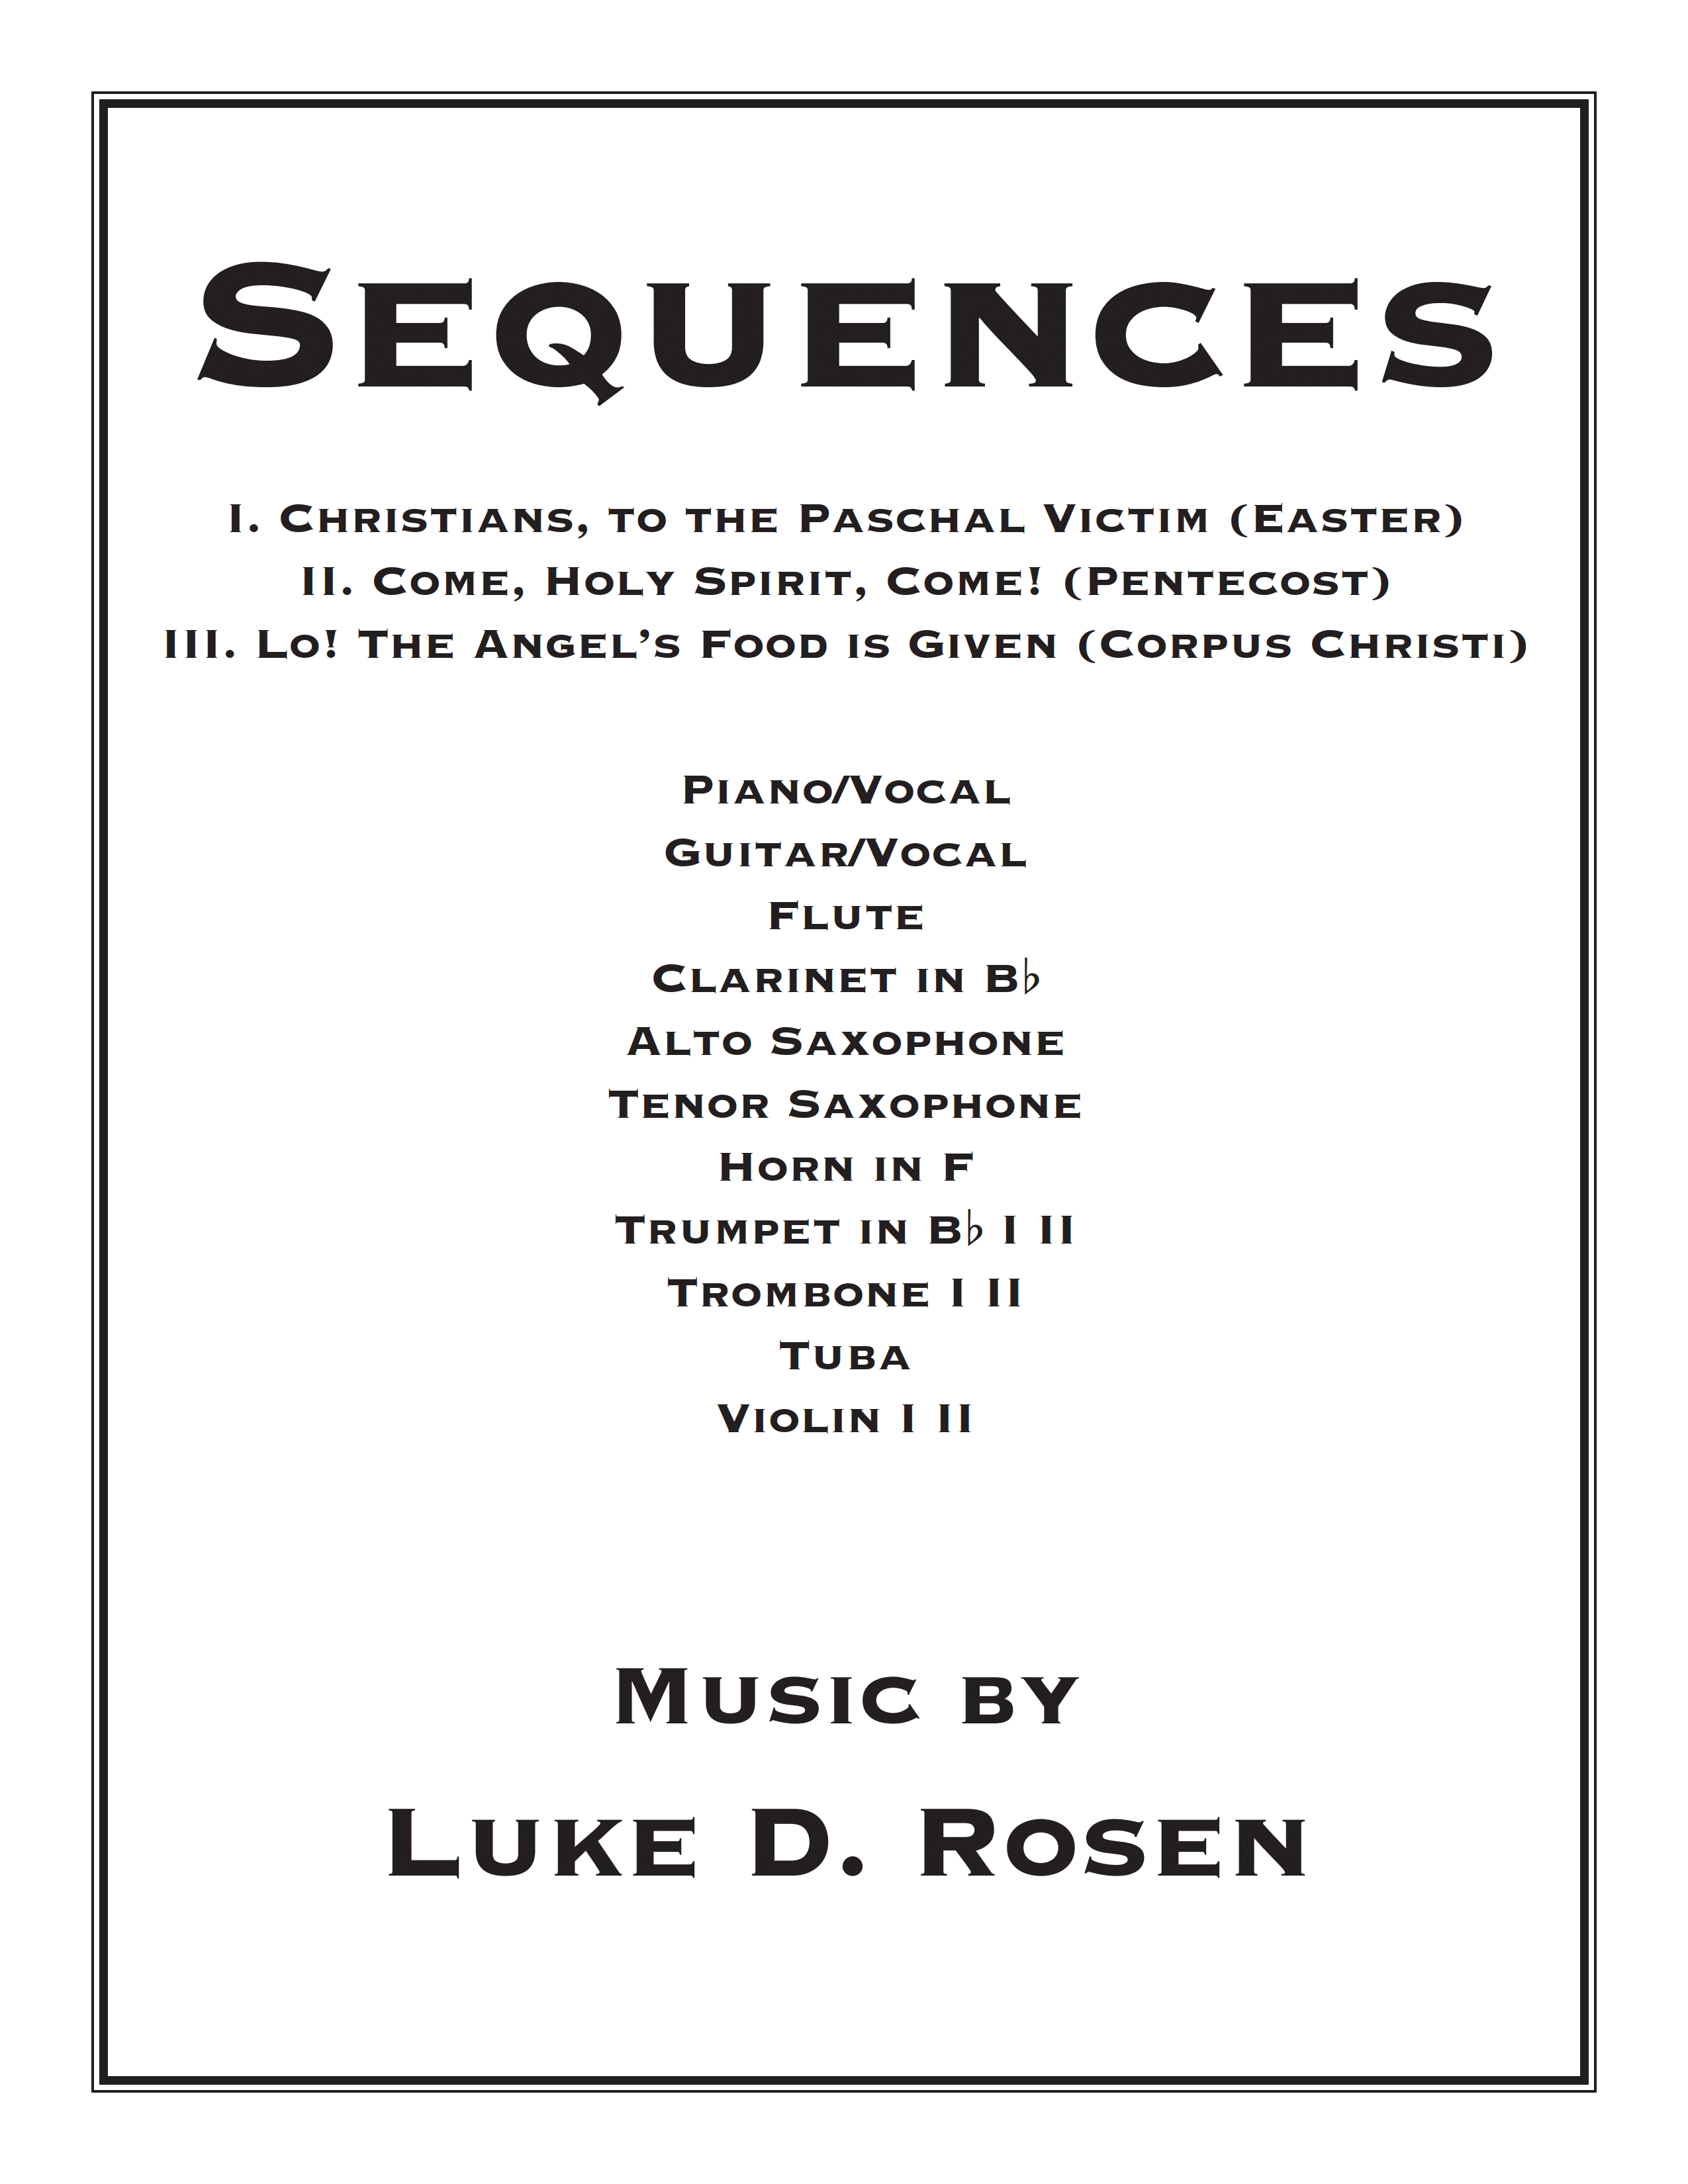 Sequences (Rosen)